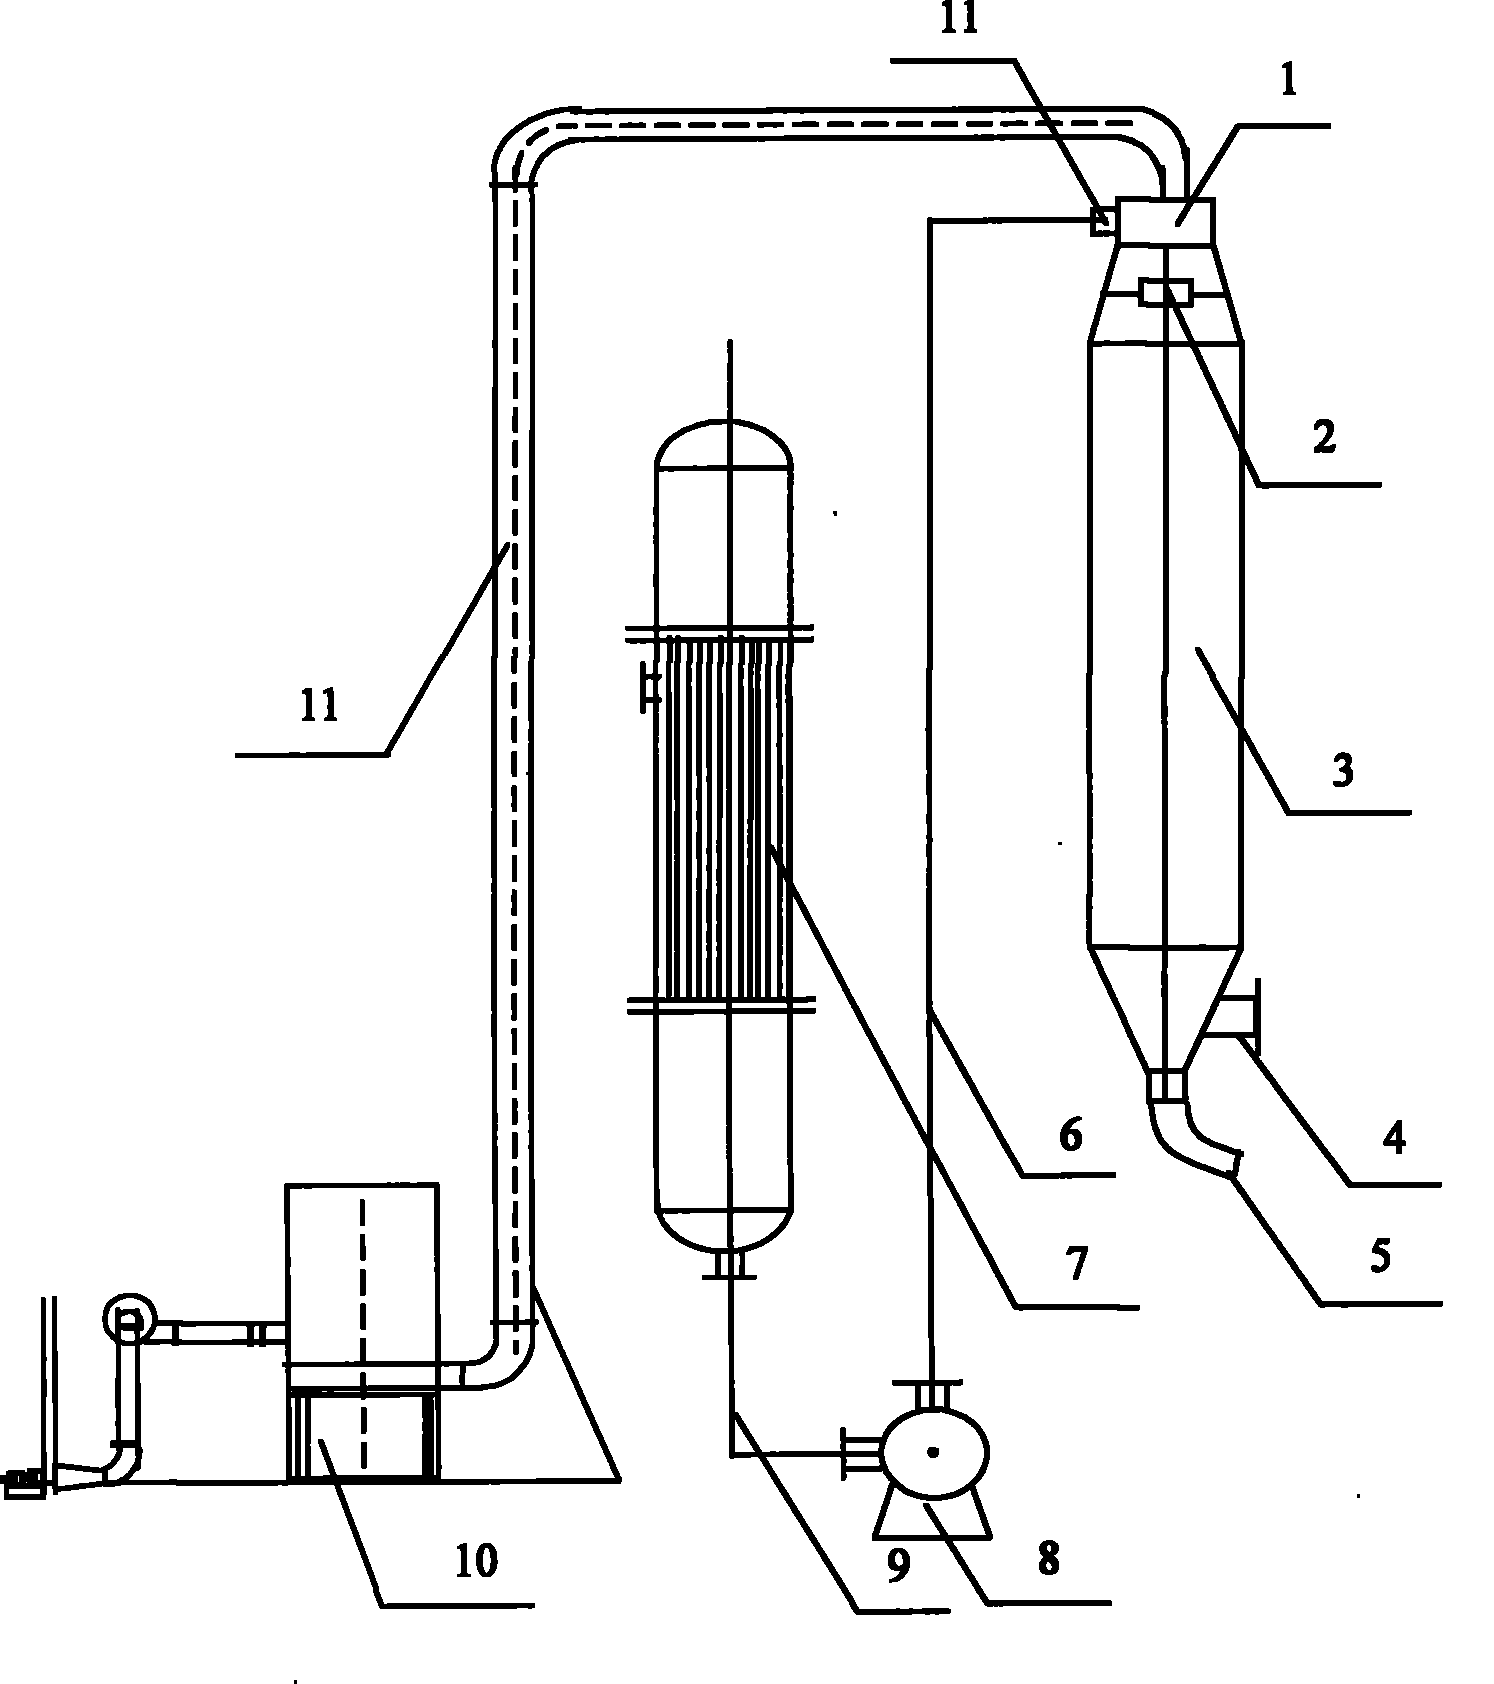 Process for producing low-density malto dextrine